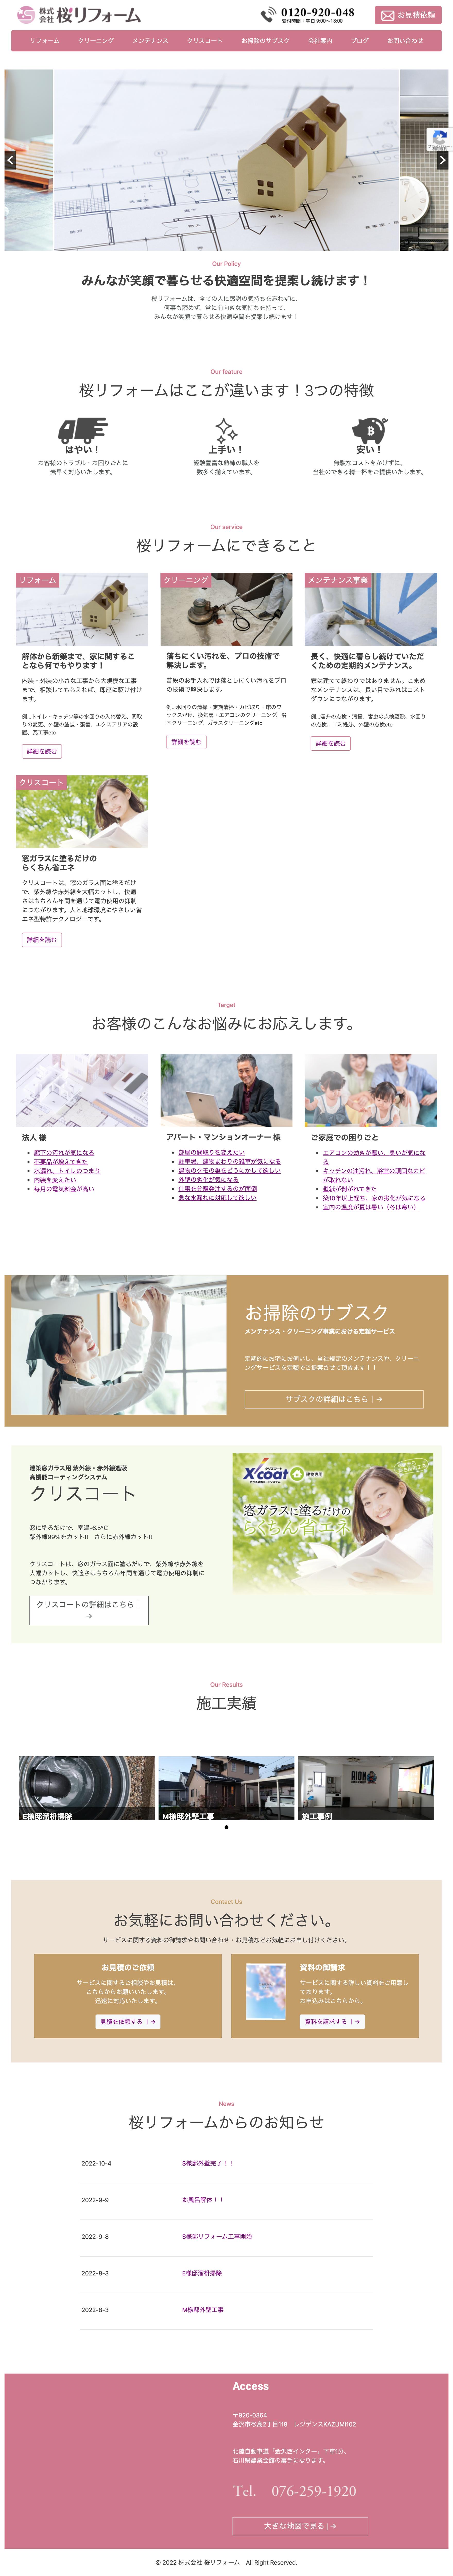 株式会社桜リフォームのトップページ